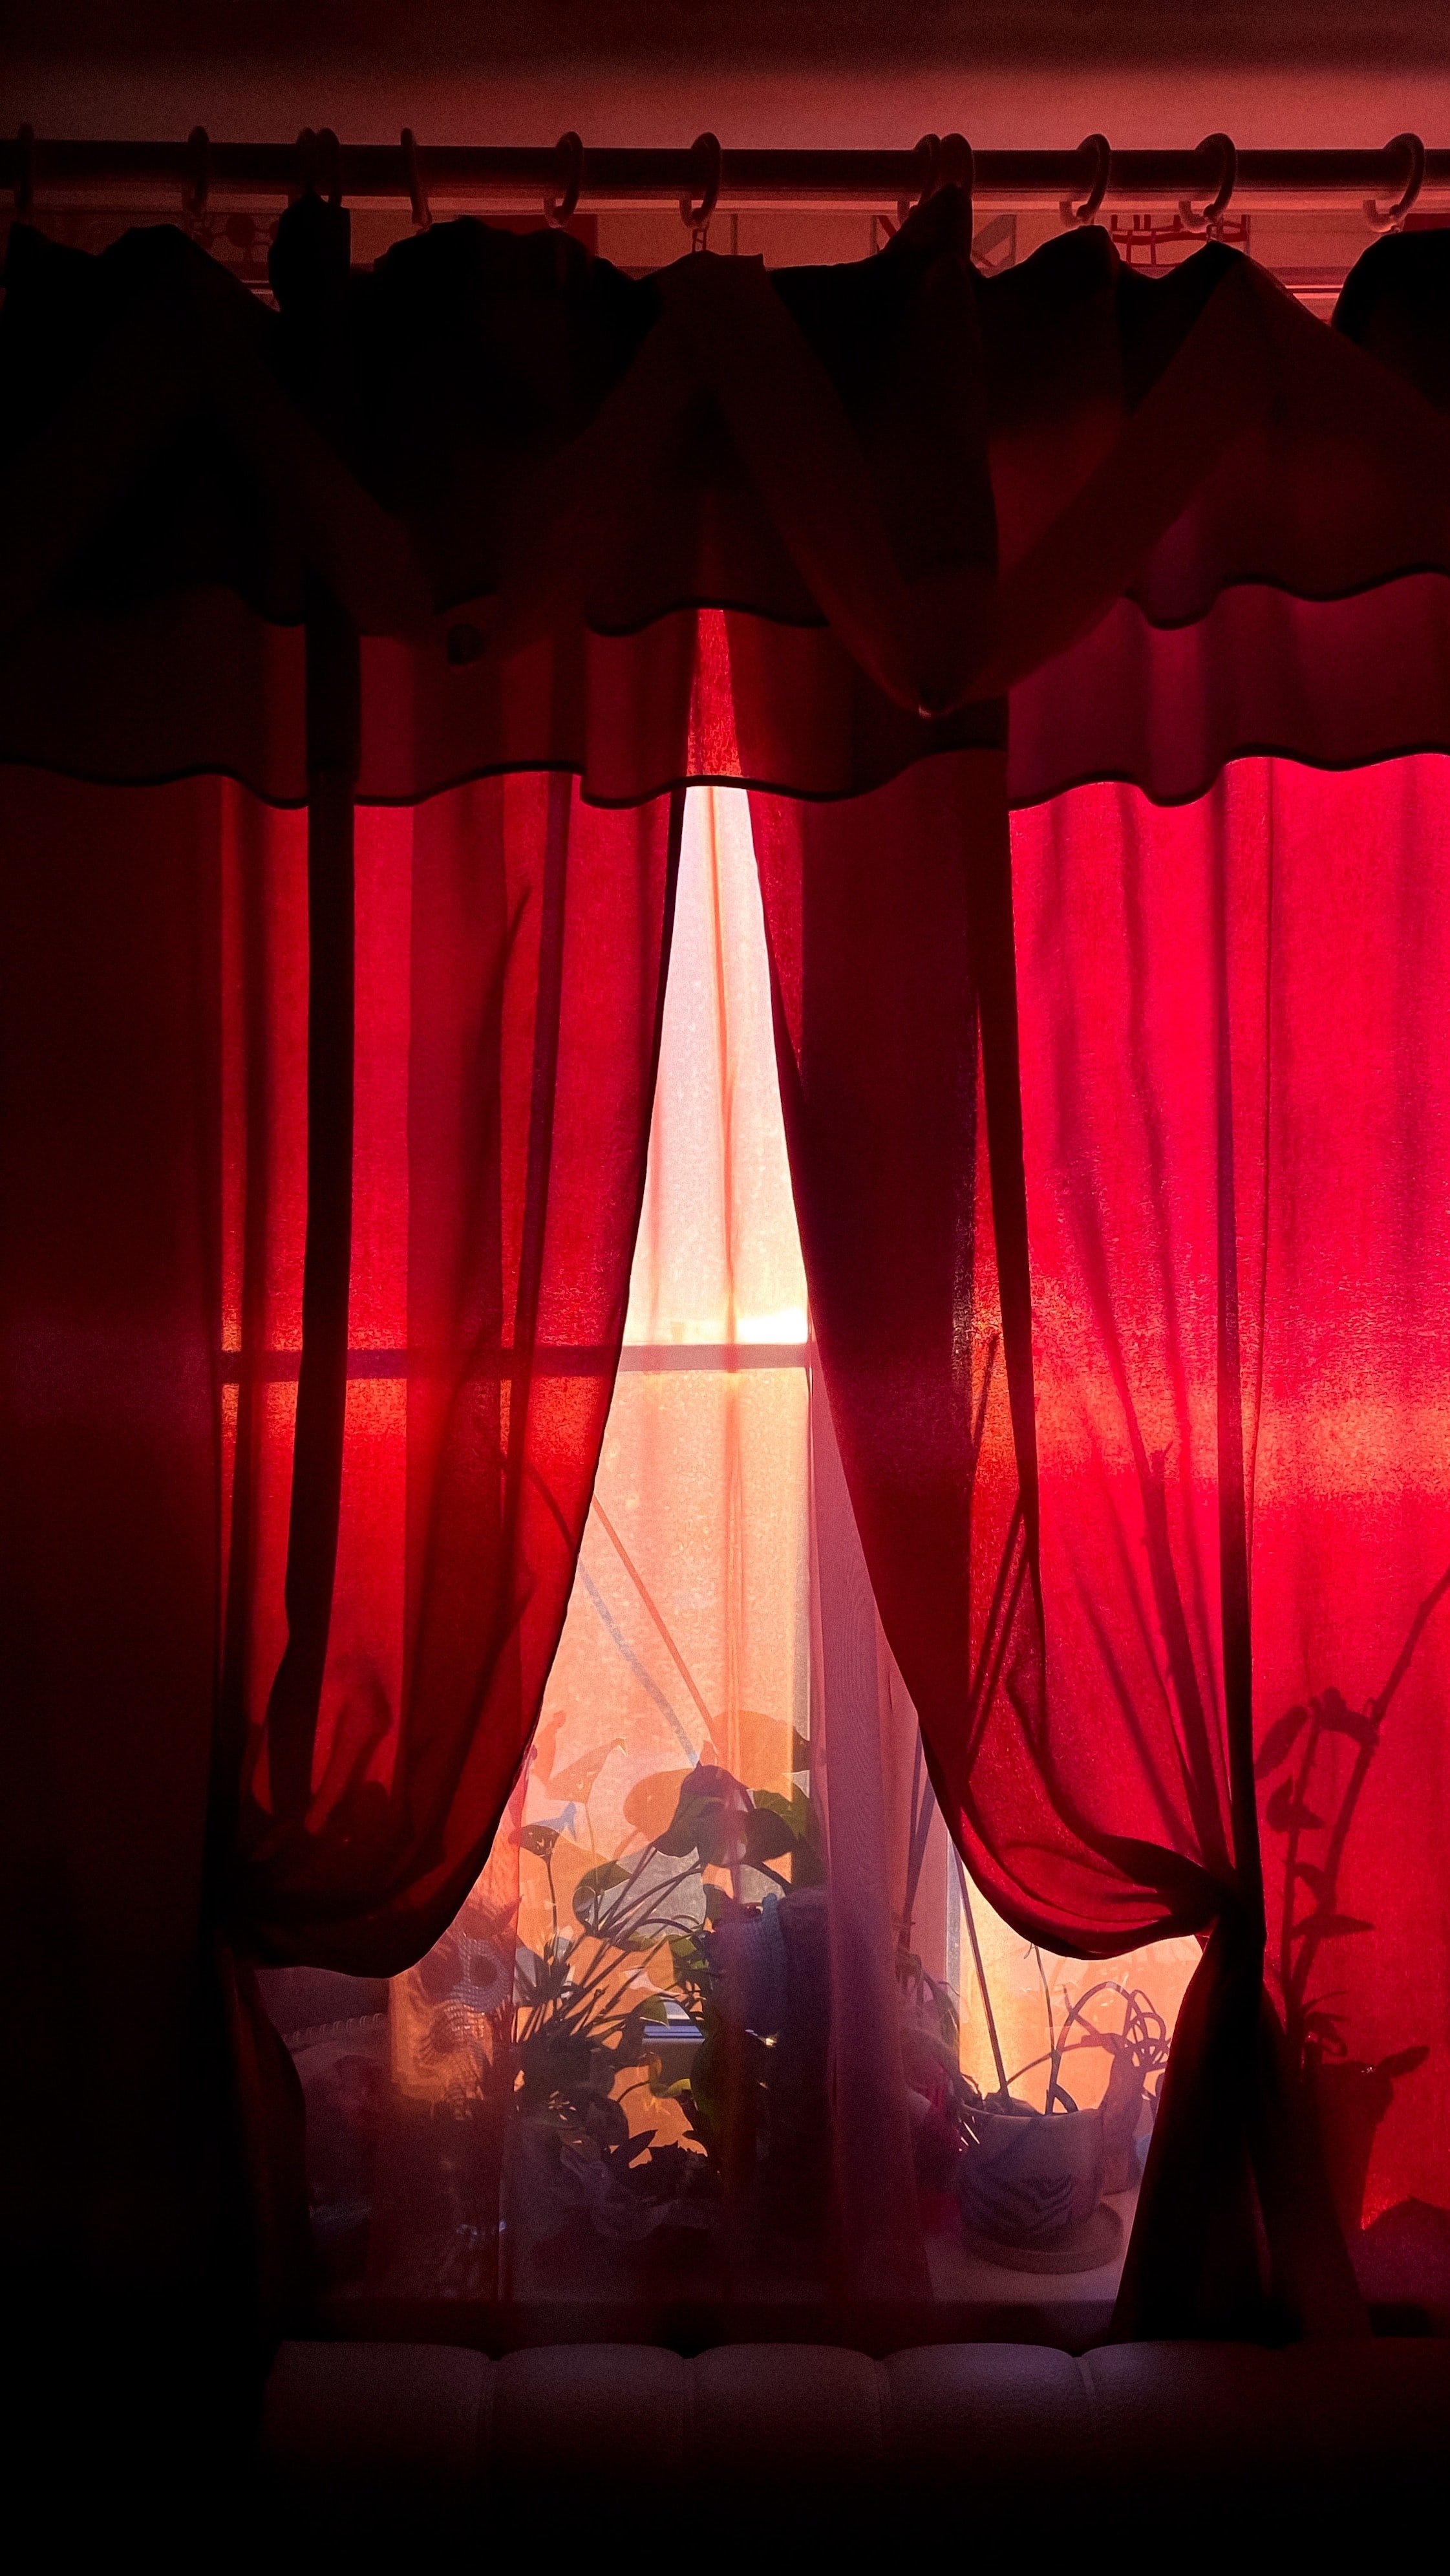 Adam beschrieb den Raum mit dem roten Vorhang. | Quelle: Unsplash